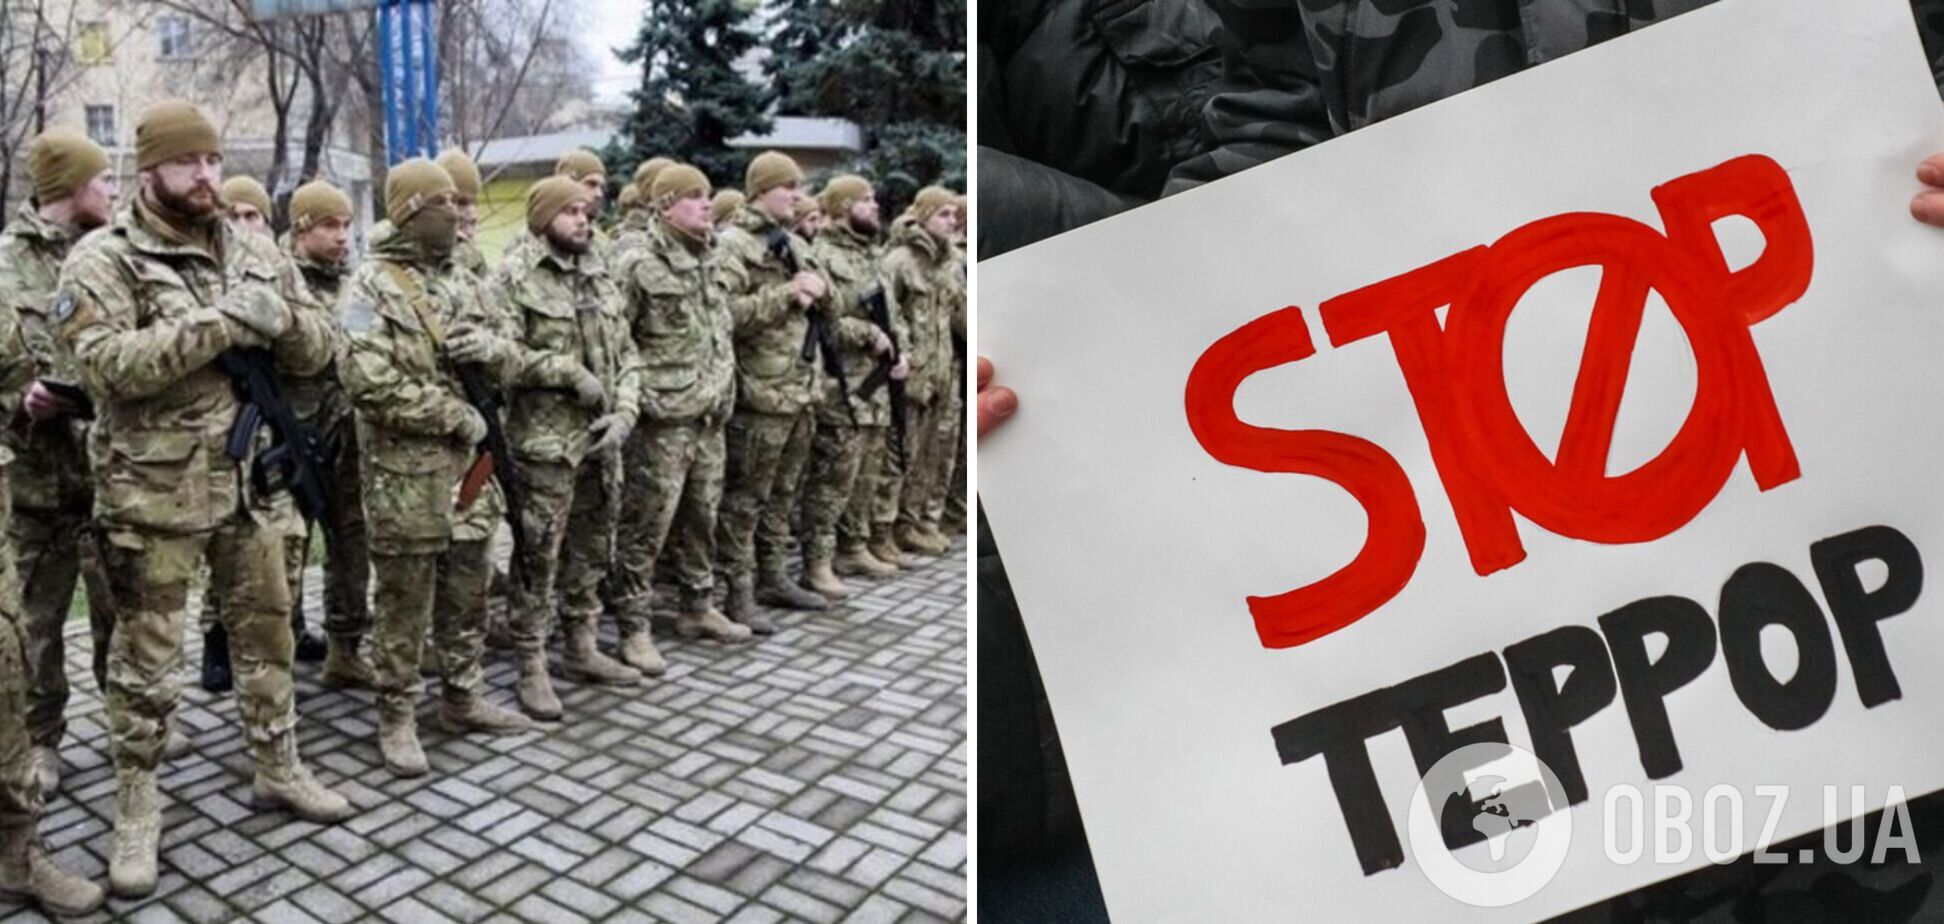 Семьи военнопленных в Еленовке просят подписать петицию: условия содержания должны соответствовать нормам ООН